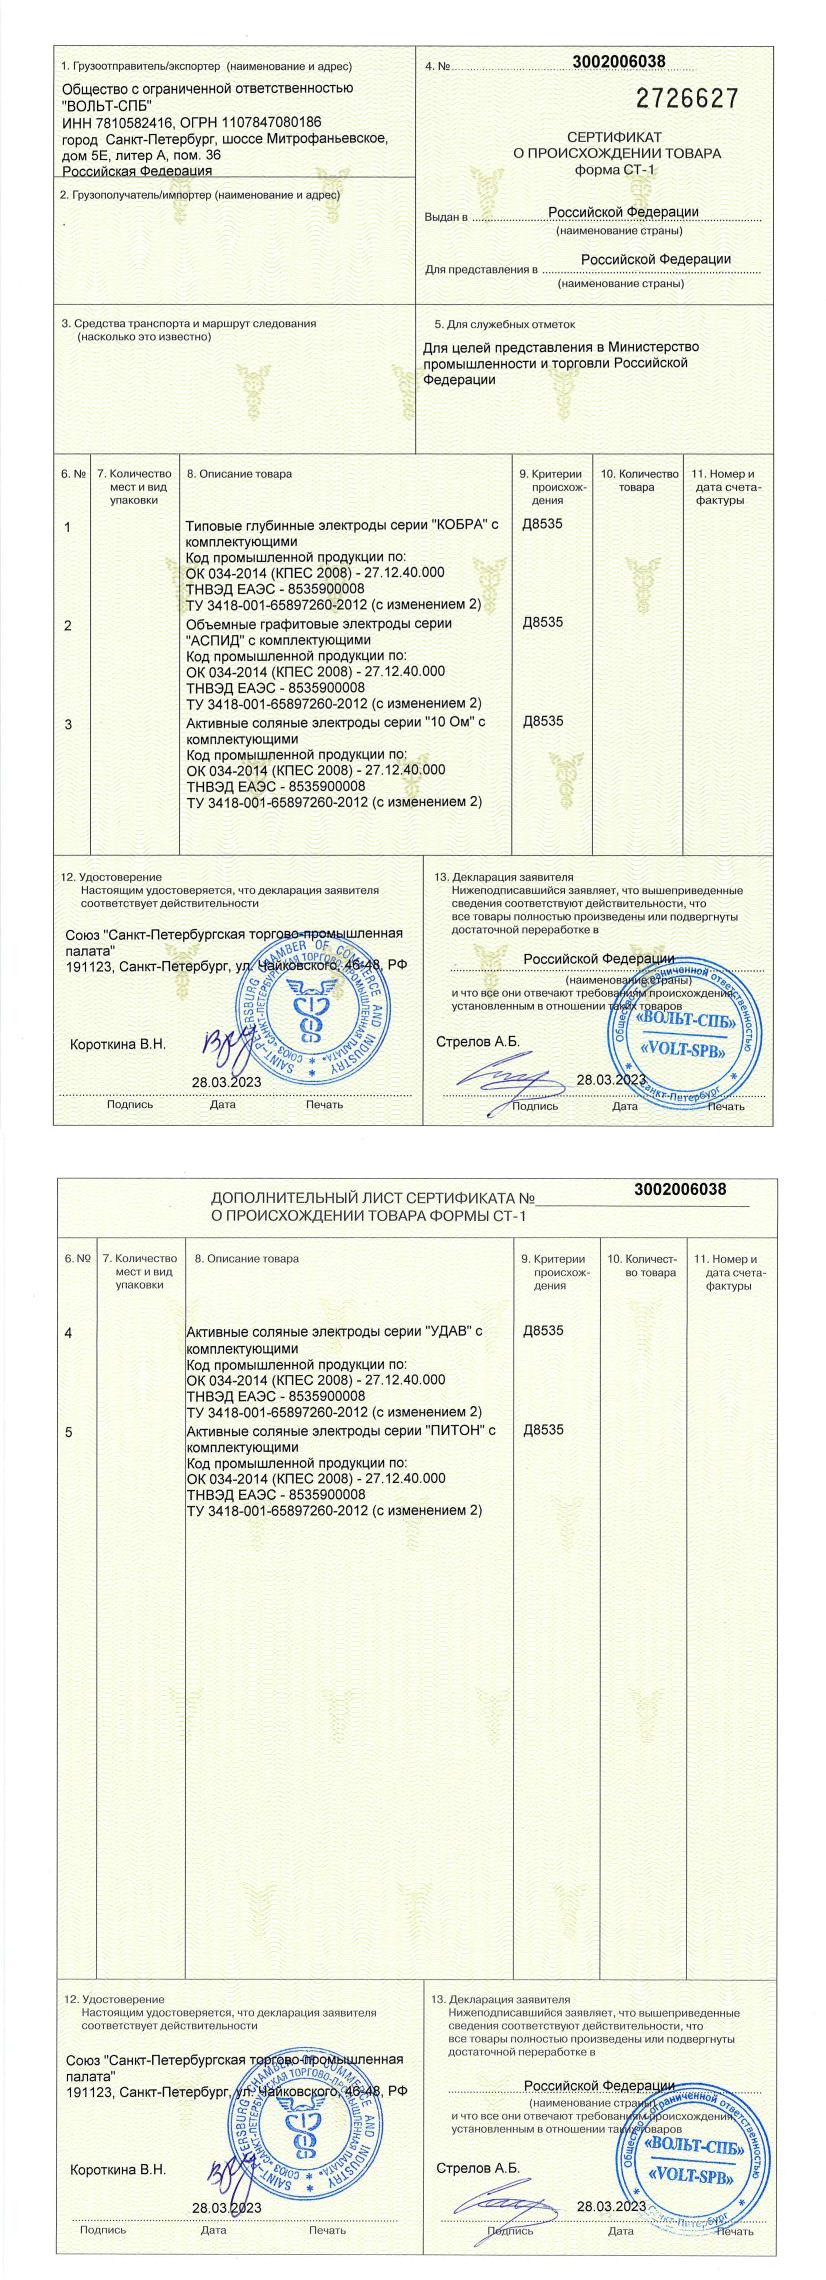 Сертификат о происхождении товара по форме СТ-1 («УДАВ», «ПИТОН», «10 Ом», «КОБРА», «АСПИД»)